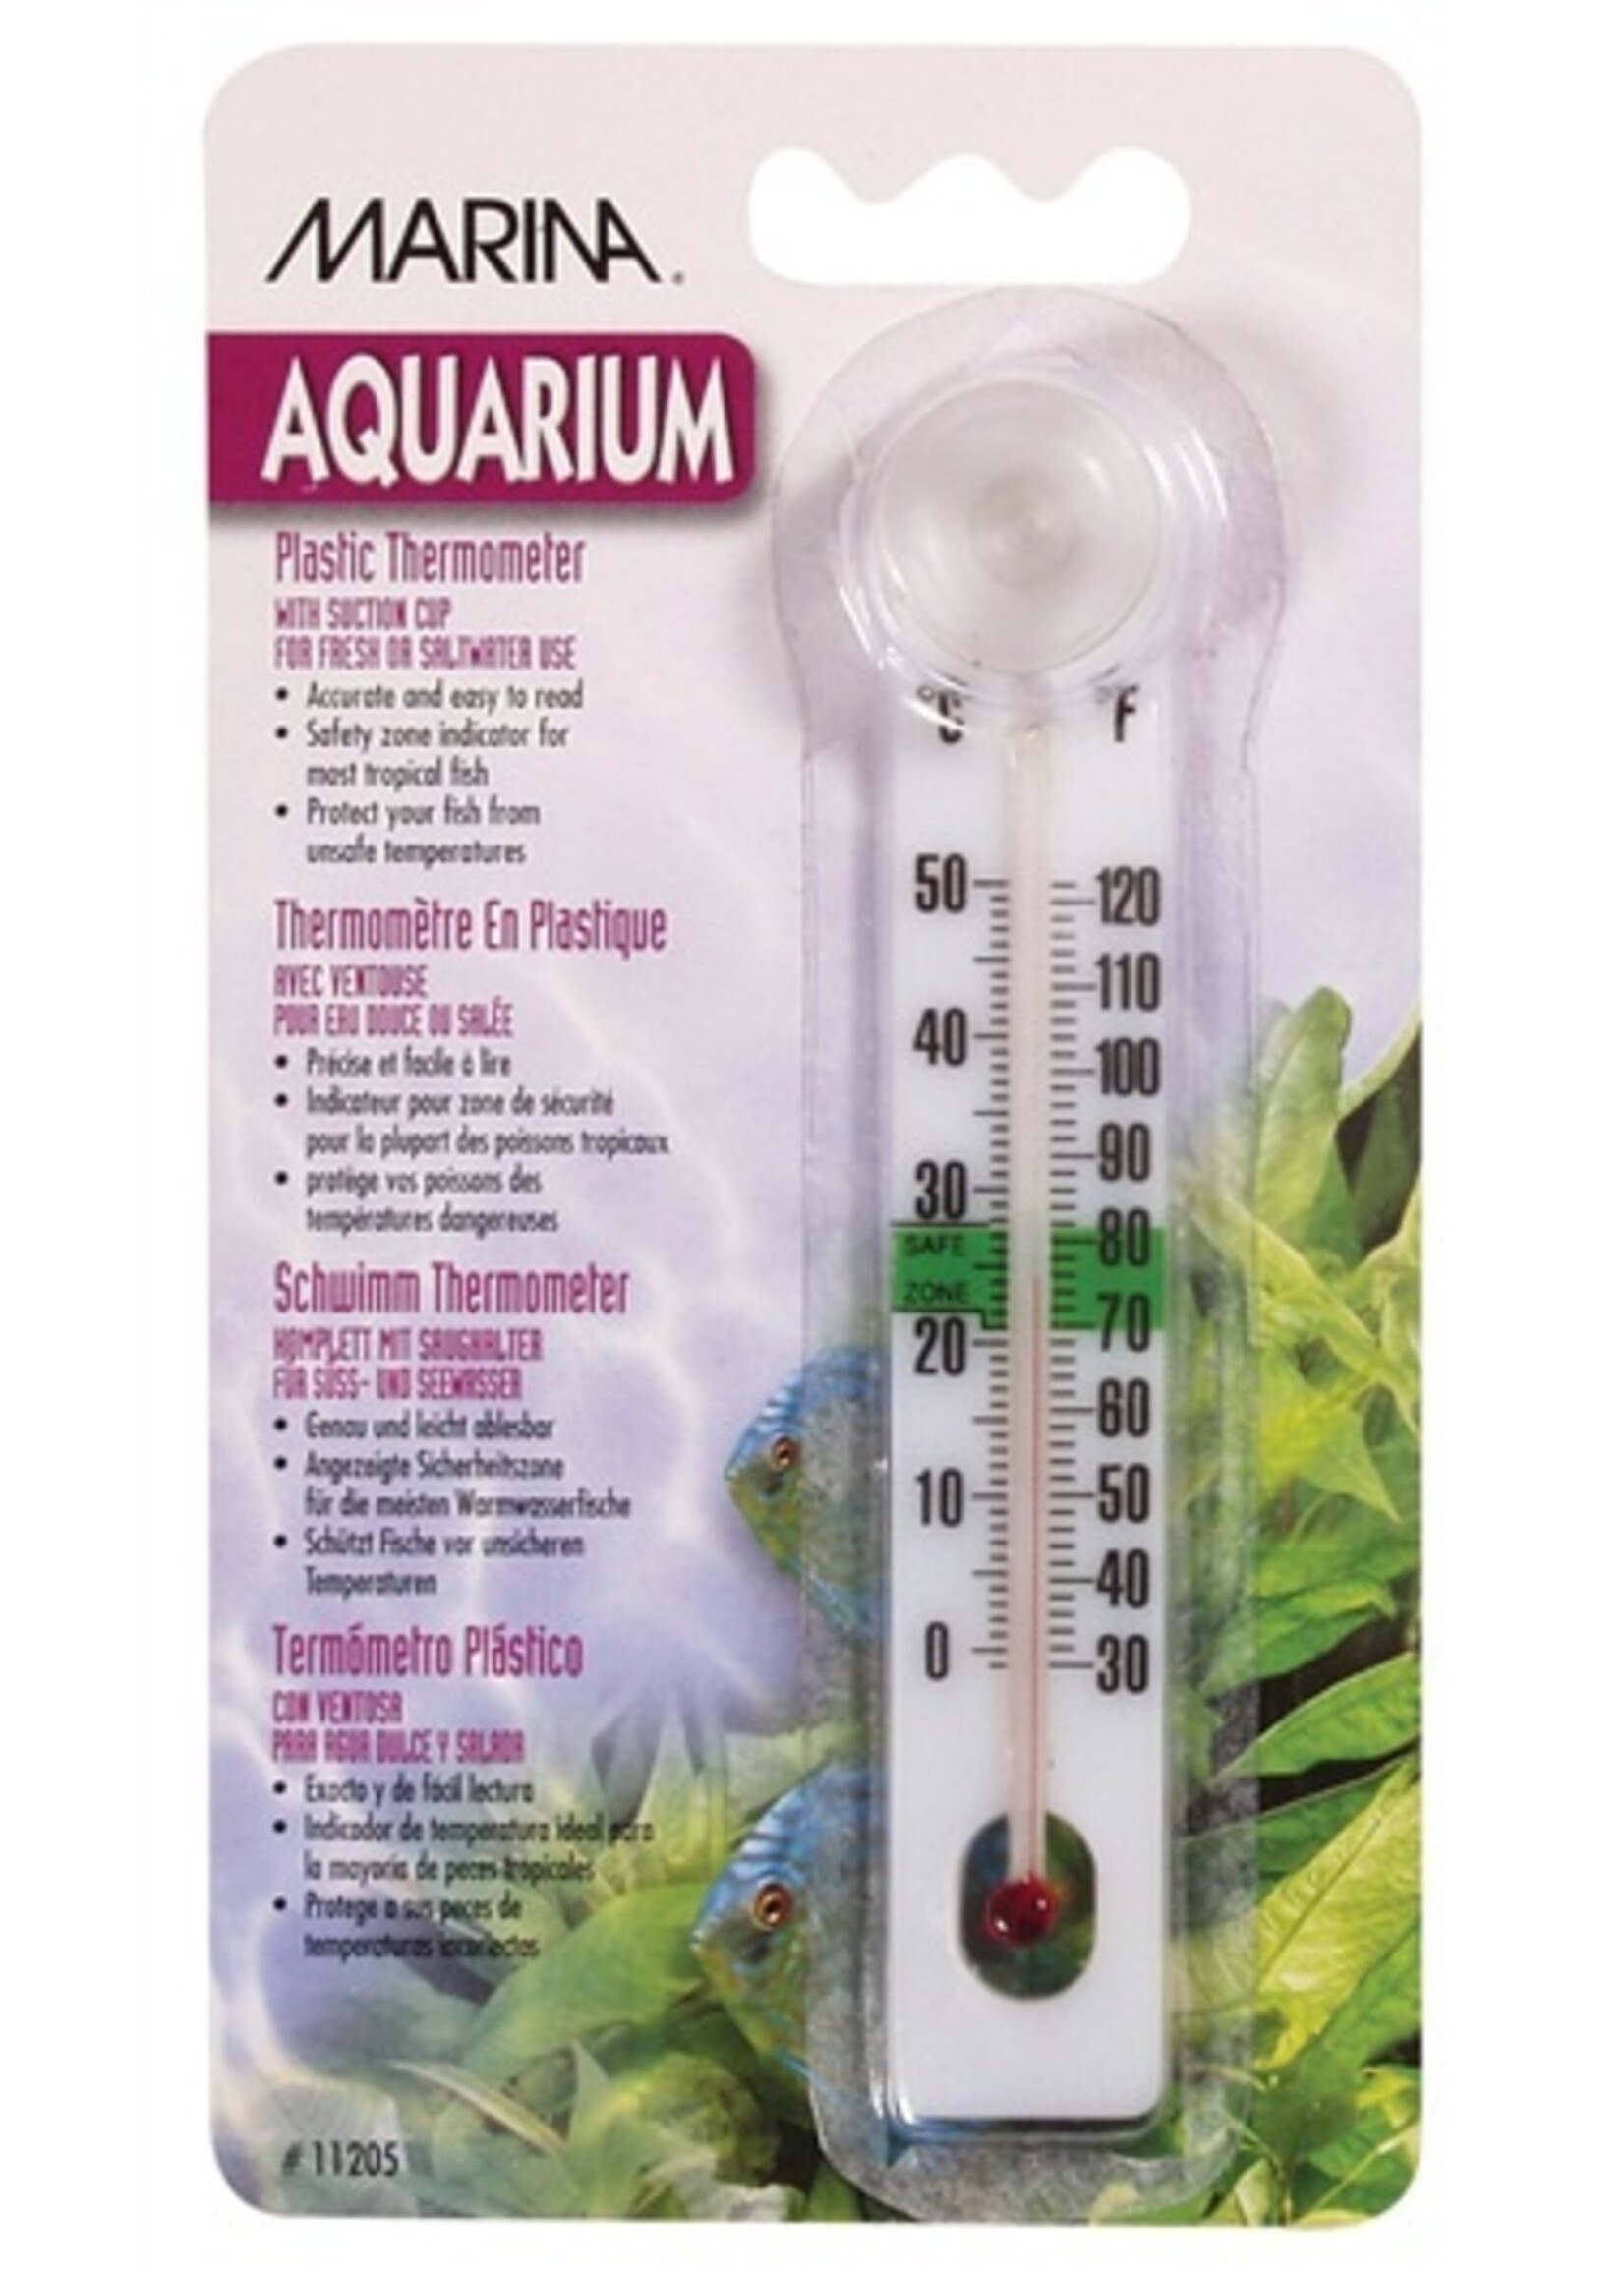 Marina Marina Liquid Crystal Plastic Thermometer-Centigrade-Fahrenheit